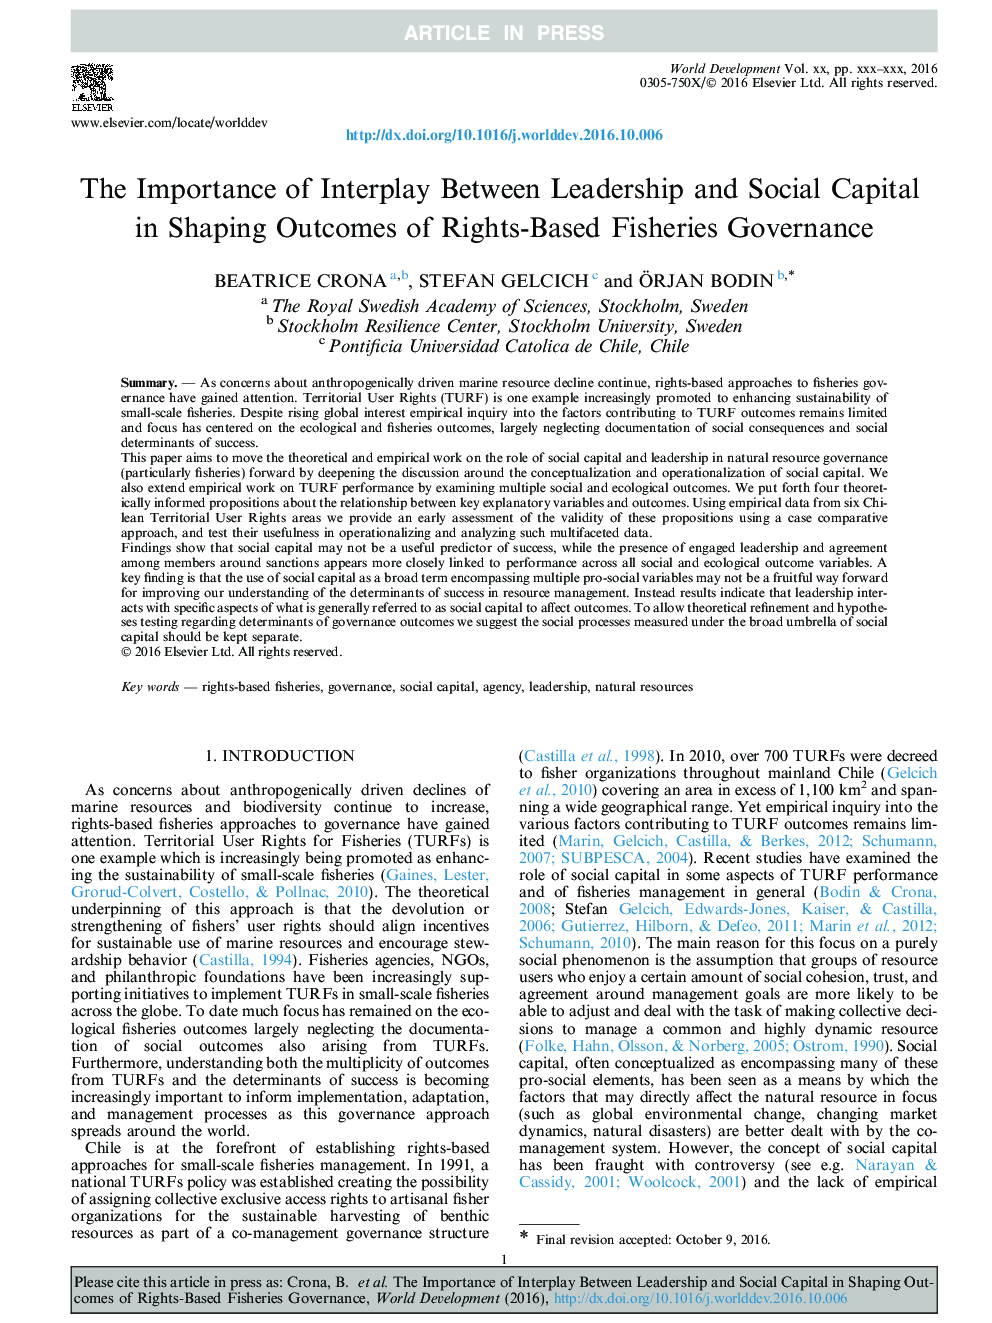 اهمیت تعامل میان رهبری و سرمایه اجتماعی در شکل گیری نتایج مدیریت شیلات مبتنی بر حقوق 